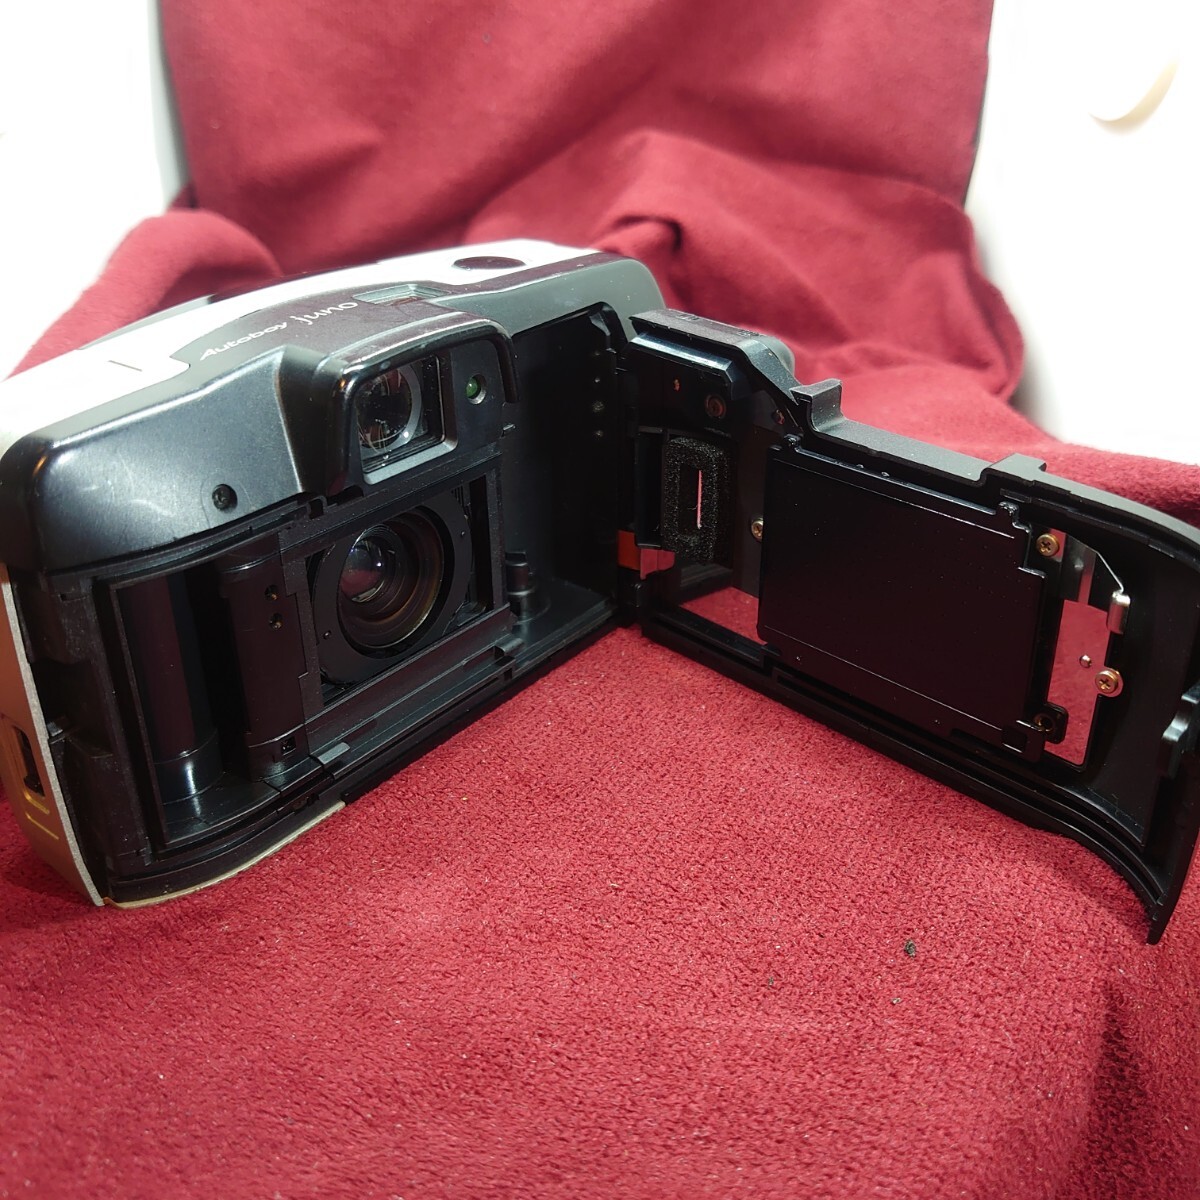 432【フラッシュ/シャッターOK】Canon Autoboy juno コンパクトフィルムカメラ キヤノン オートボーイ ジュノー LENS F:4.5-6.7 38-60mm_画像9